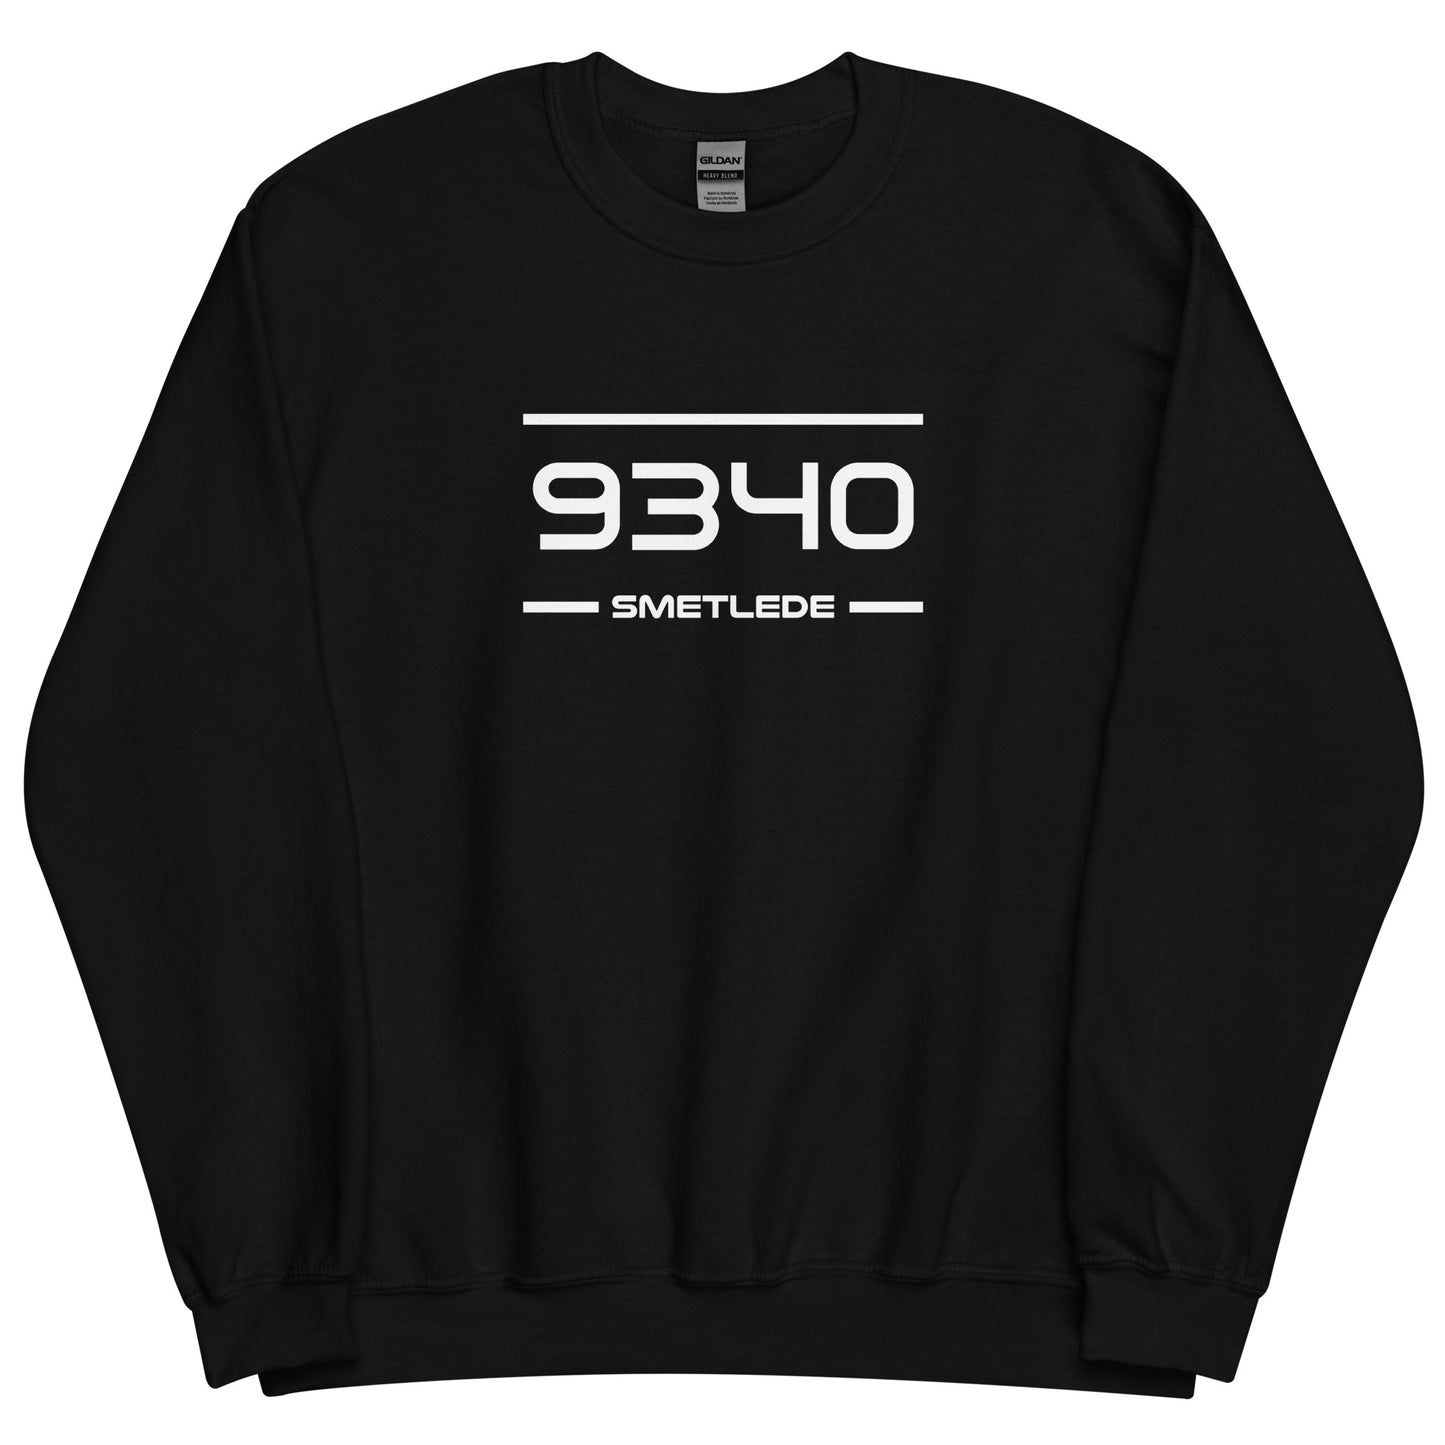 Sweater - 9340 - Smetlede (M/V)